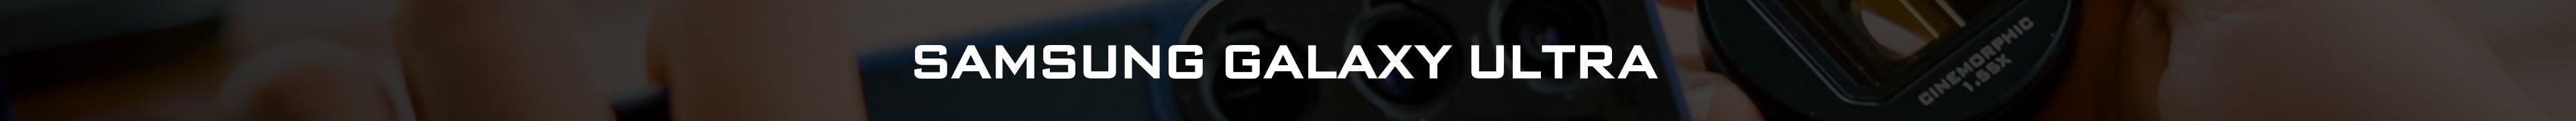 Kit de lentes Samsung Galaxy Ultra: ND, CPL, anamórficos y más